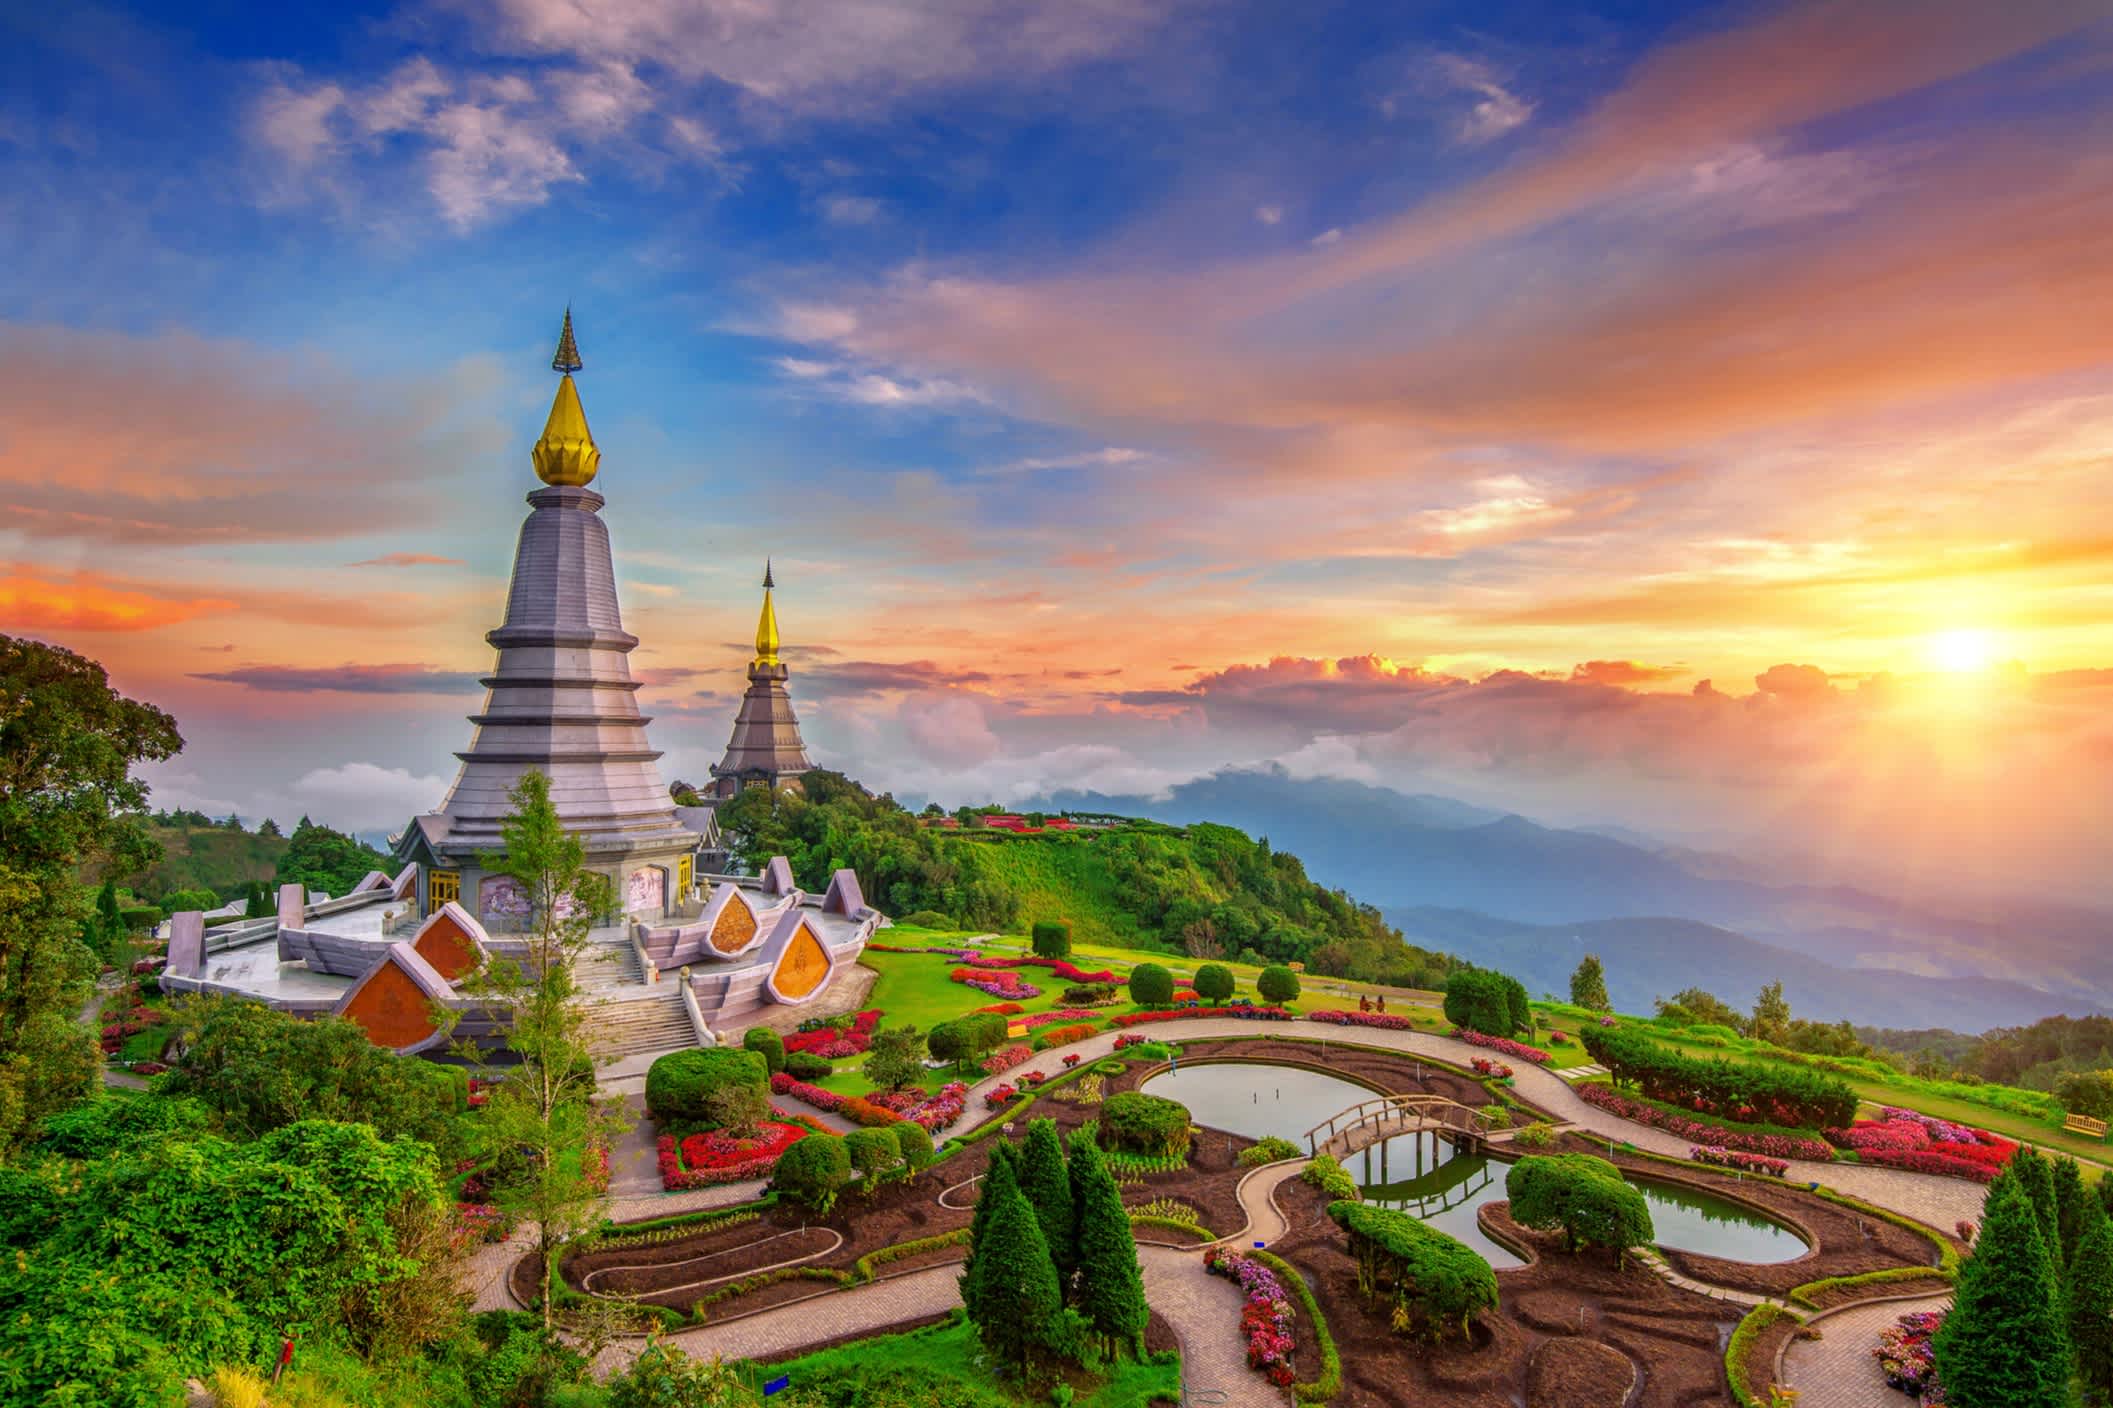 Le meilleur de la campagne à Chiang mai, en Thaïlande : la montagne Inthanon.
